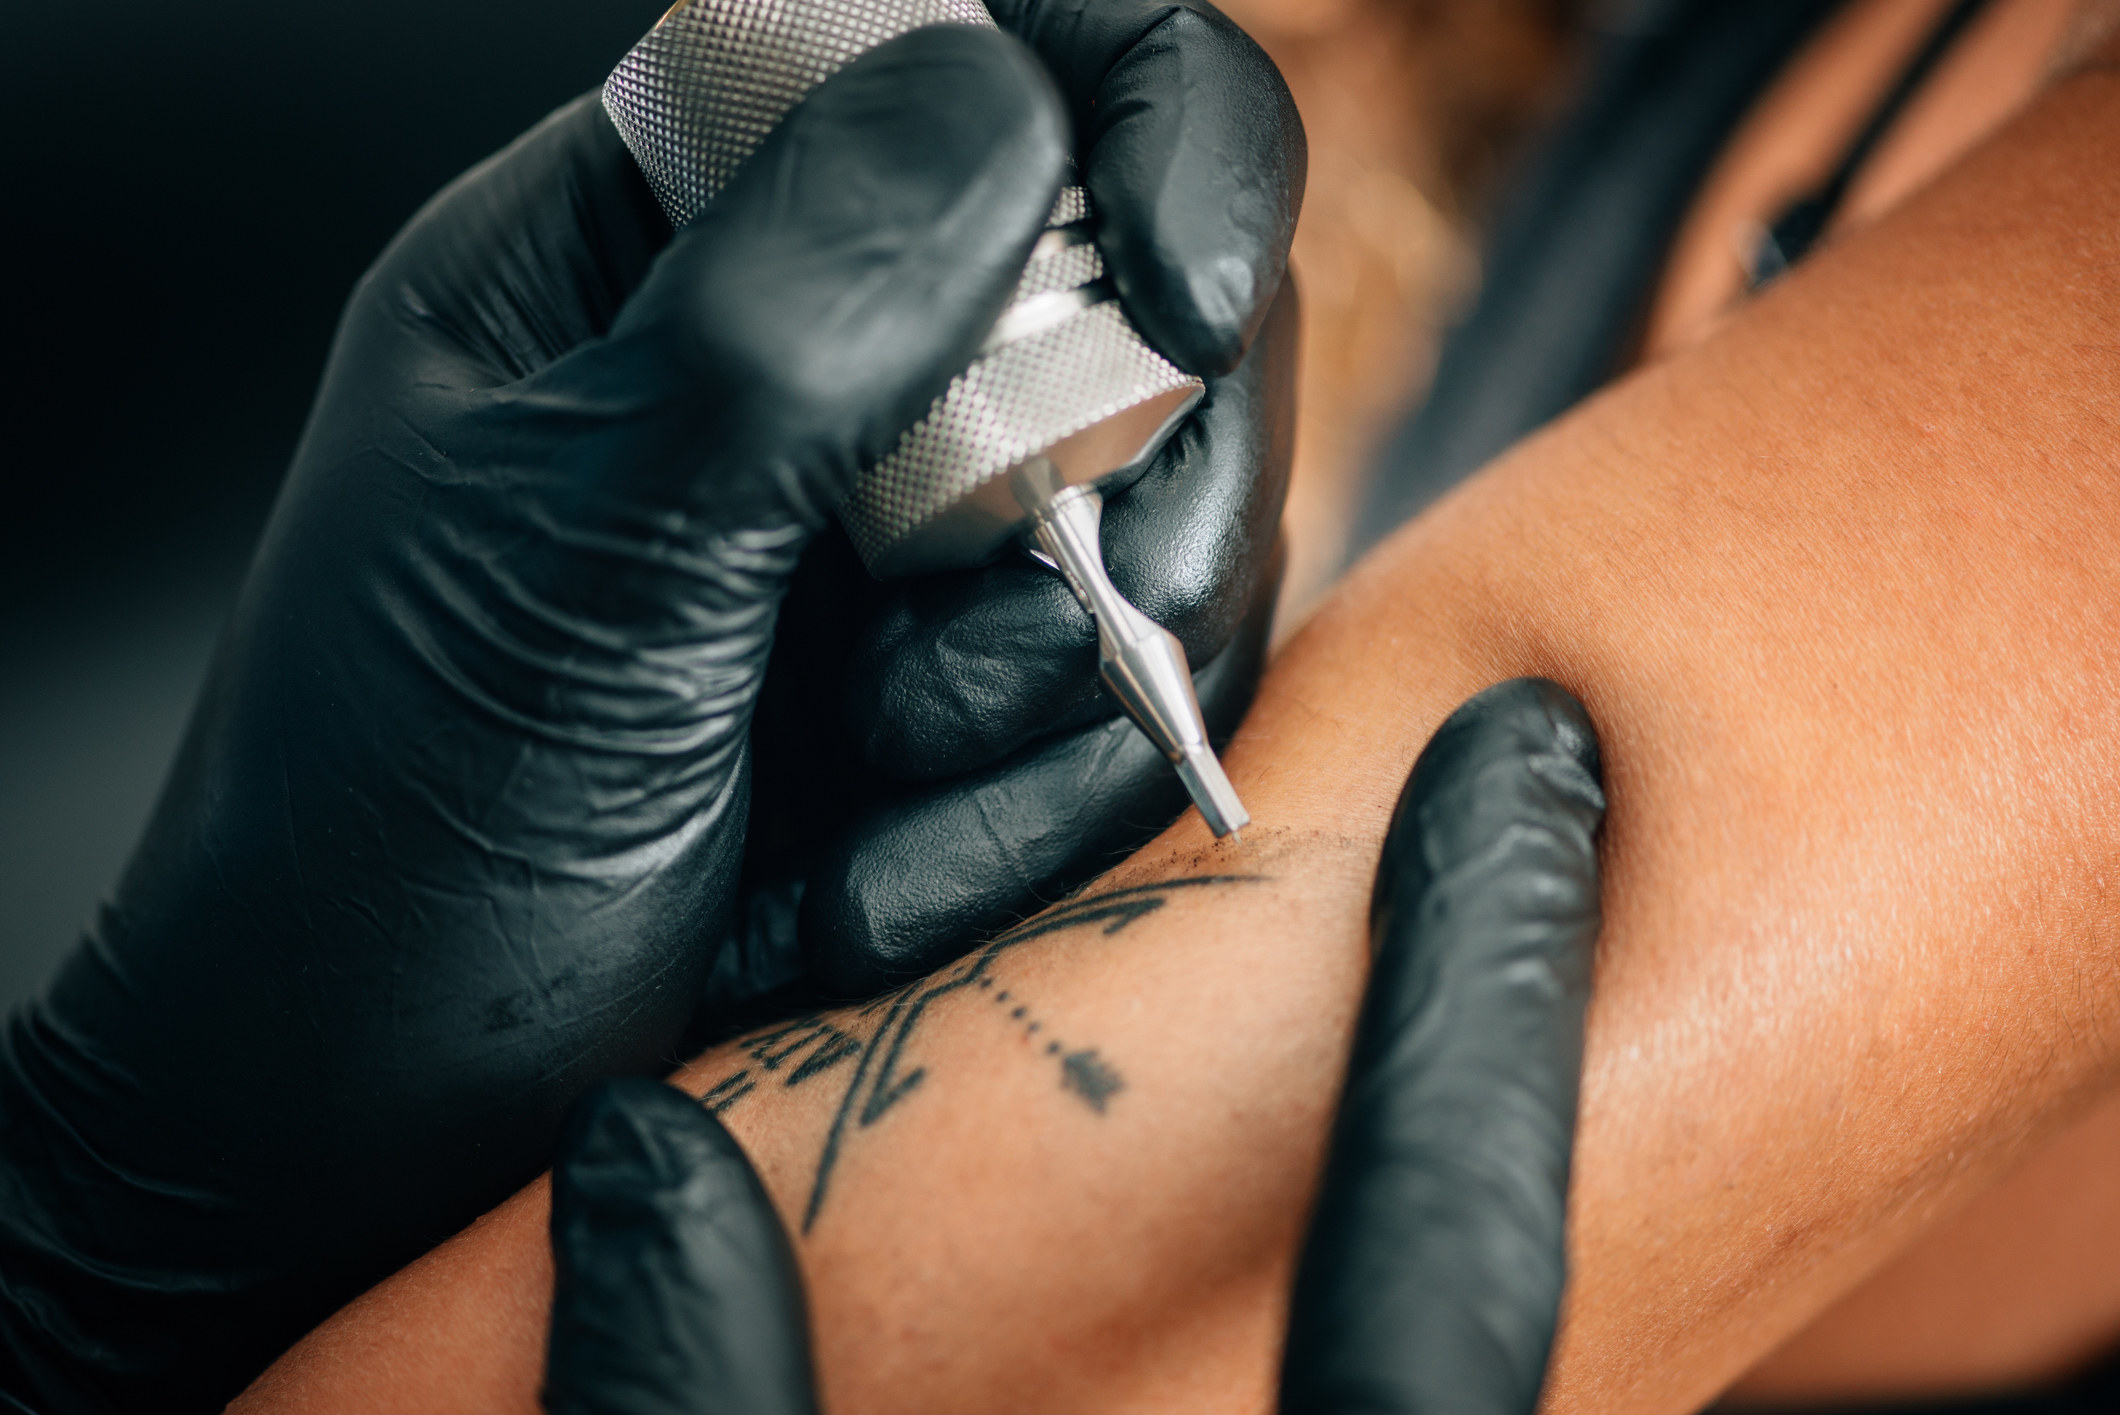 Tattoo Artists Reveal What It's Like To Tattoo Genitalia